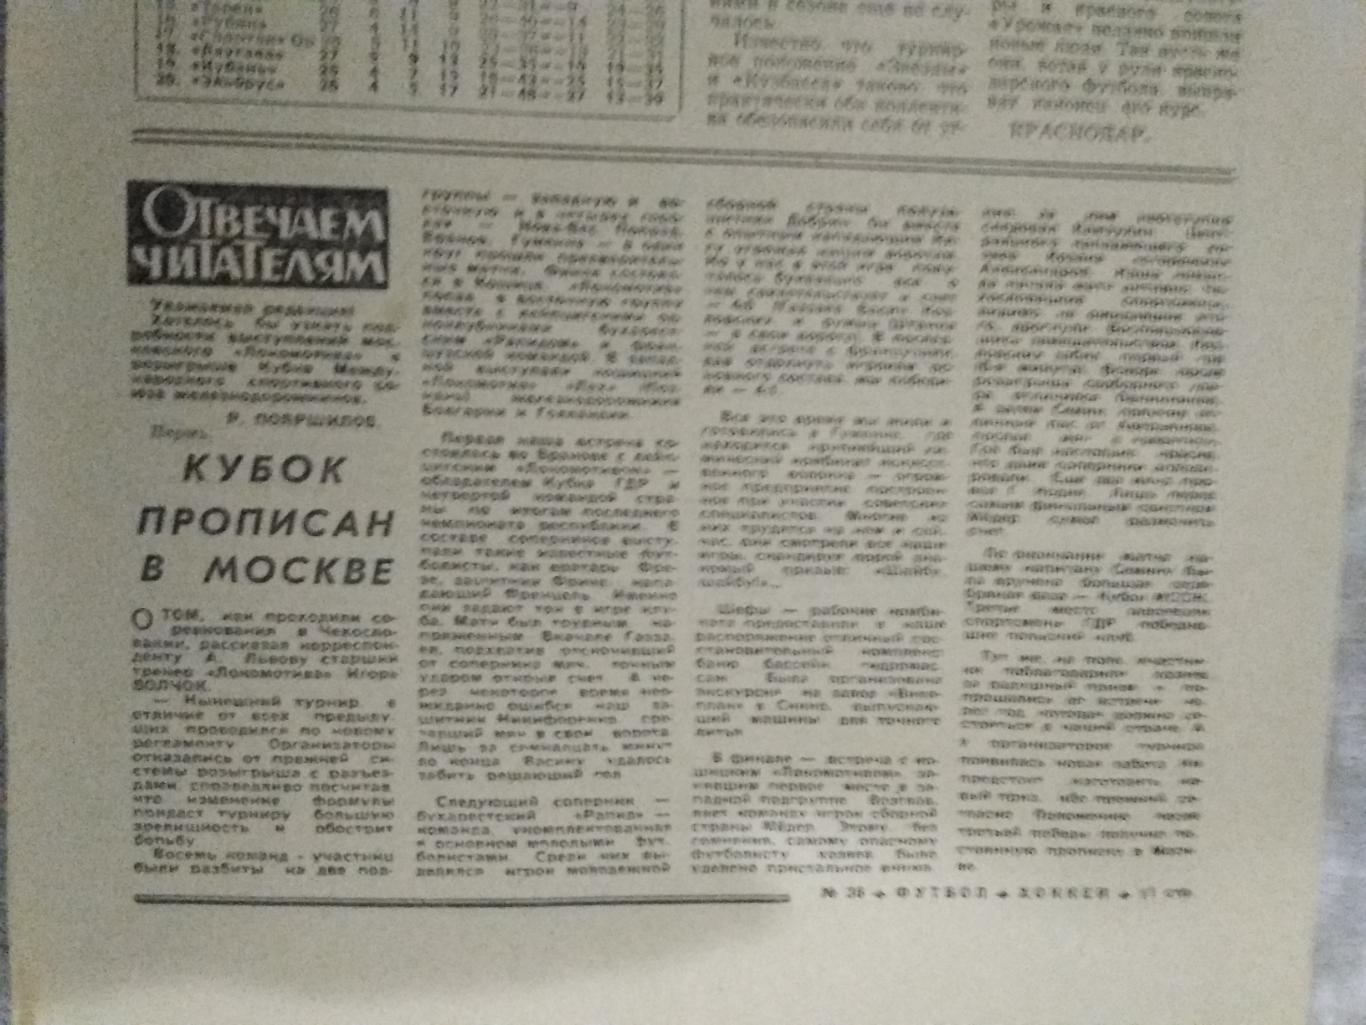 Статья.Футбол.Локомотив (Москва) - обладатель Кубка МССЖ.Футбол-Хоккей 1976 г.